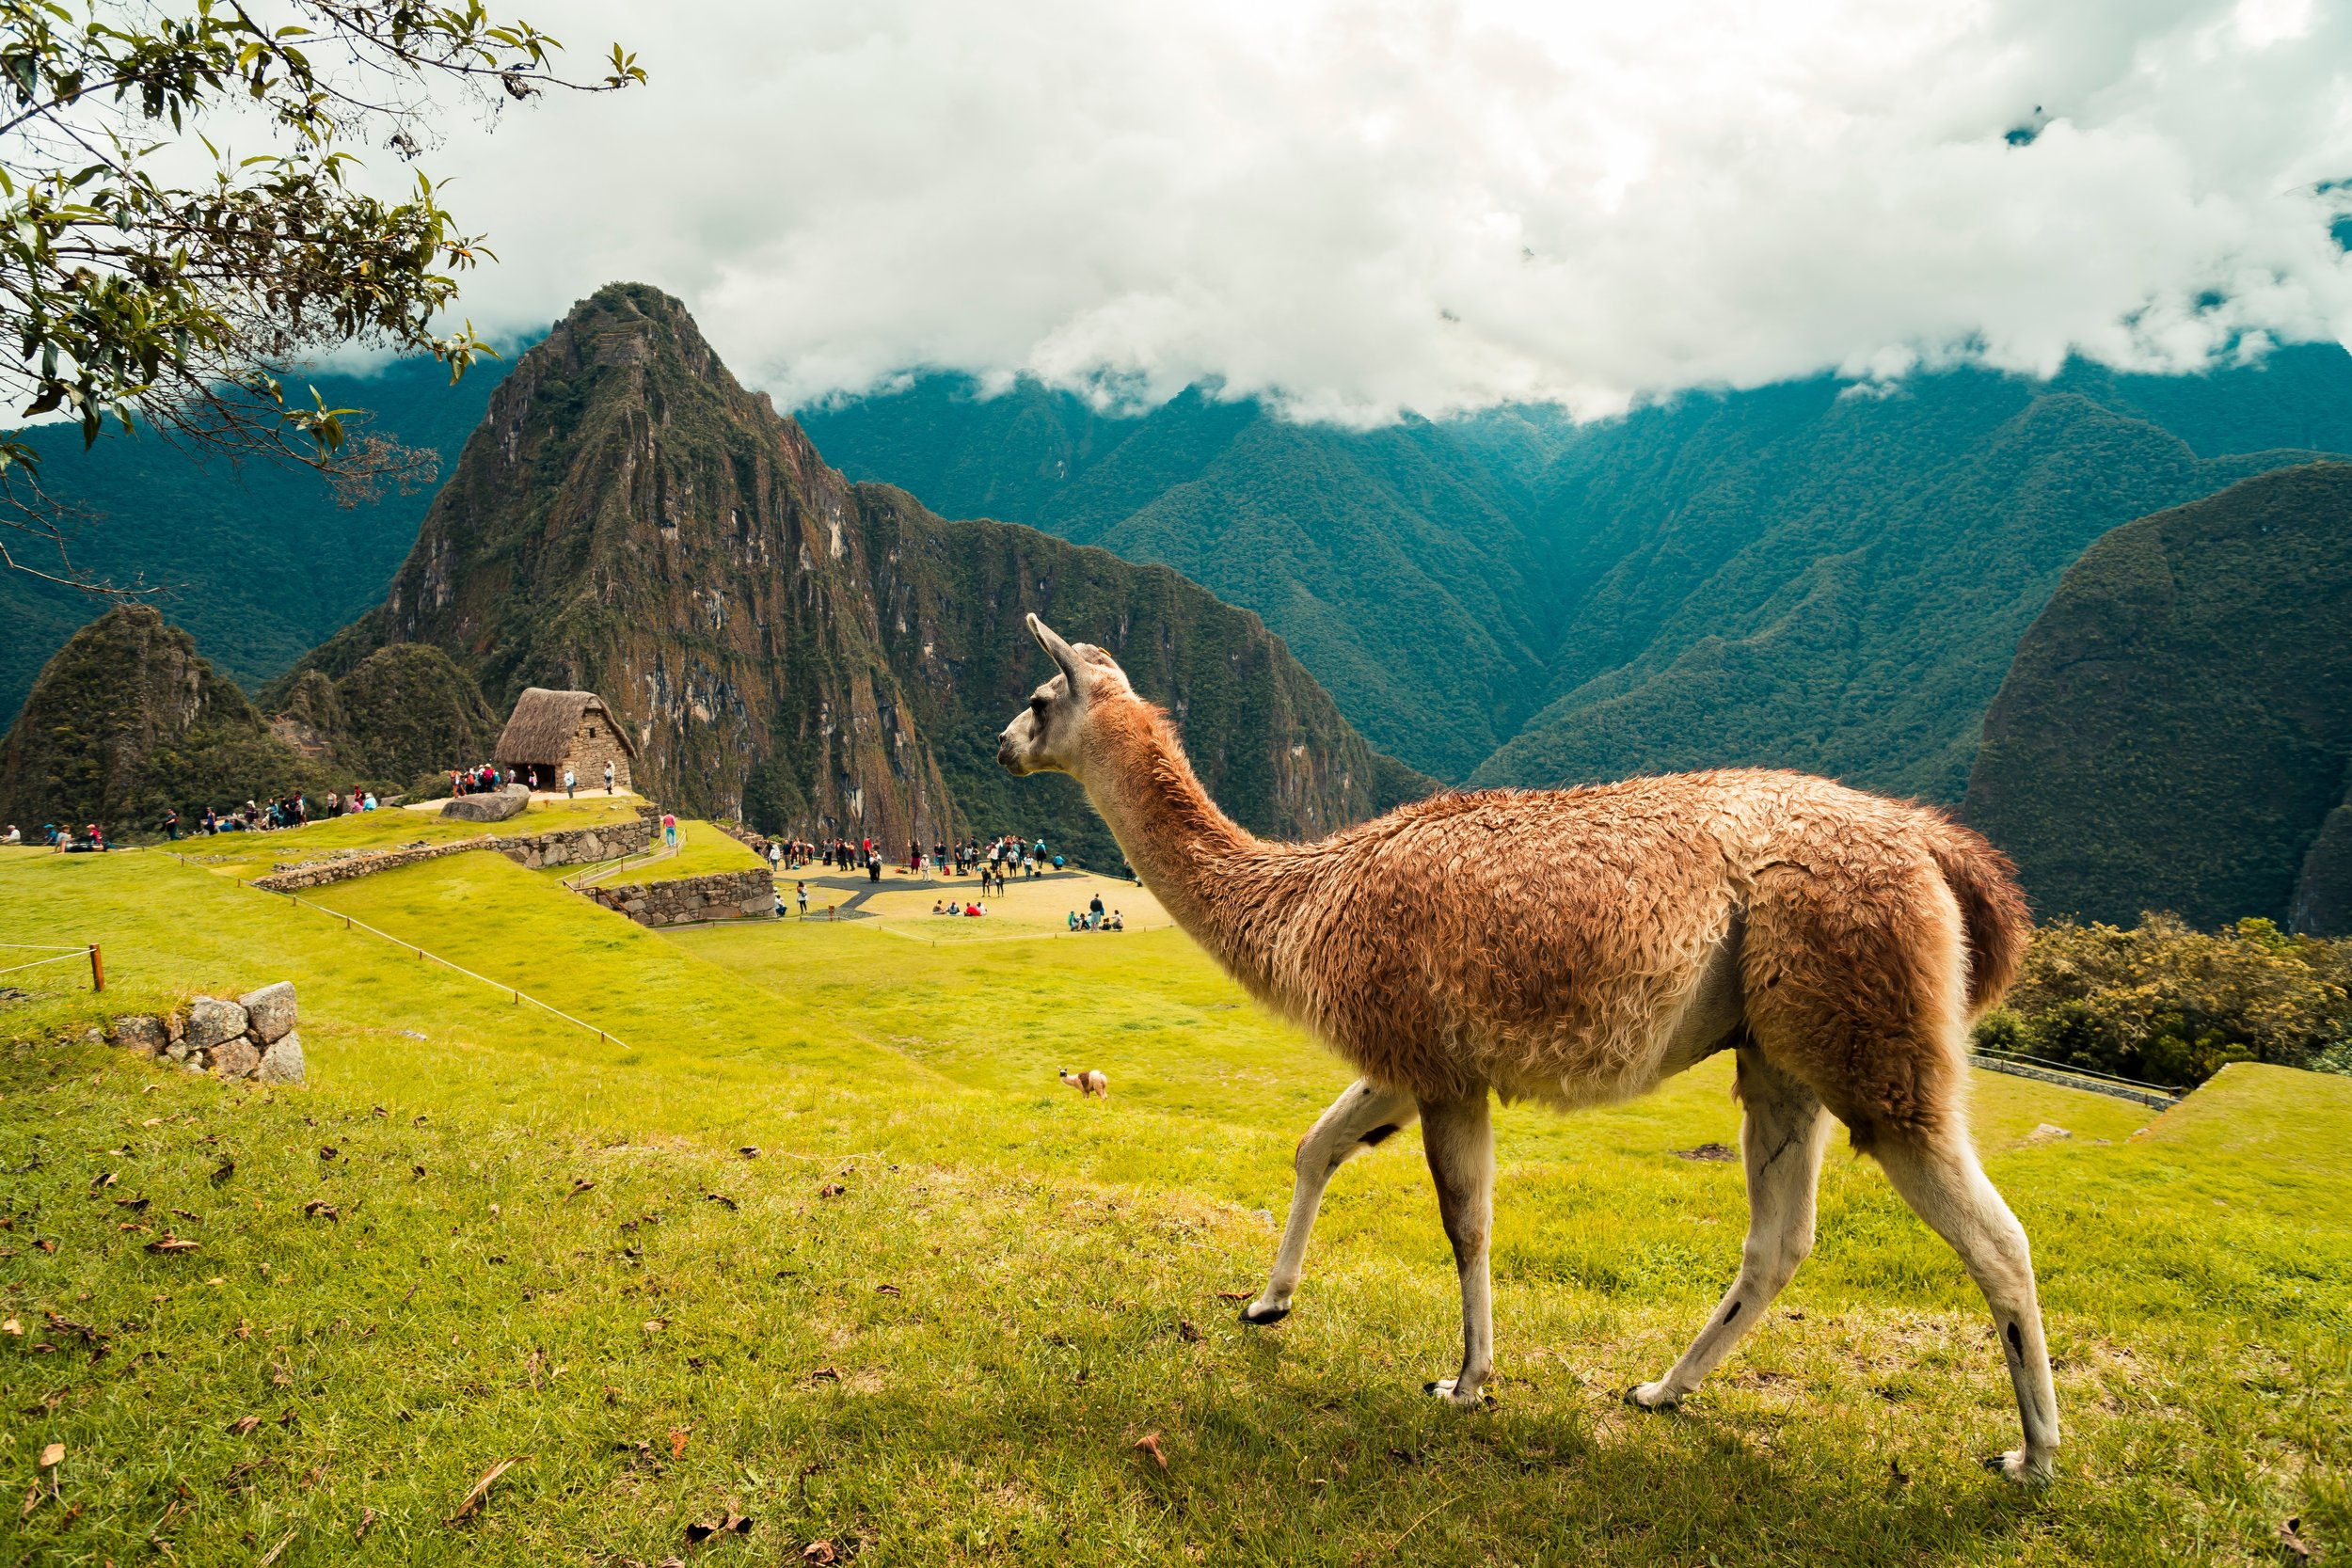 Machu Picchu.jpg